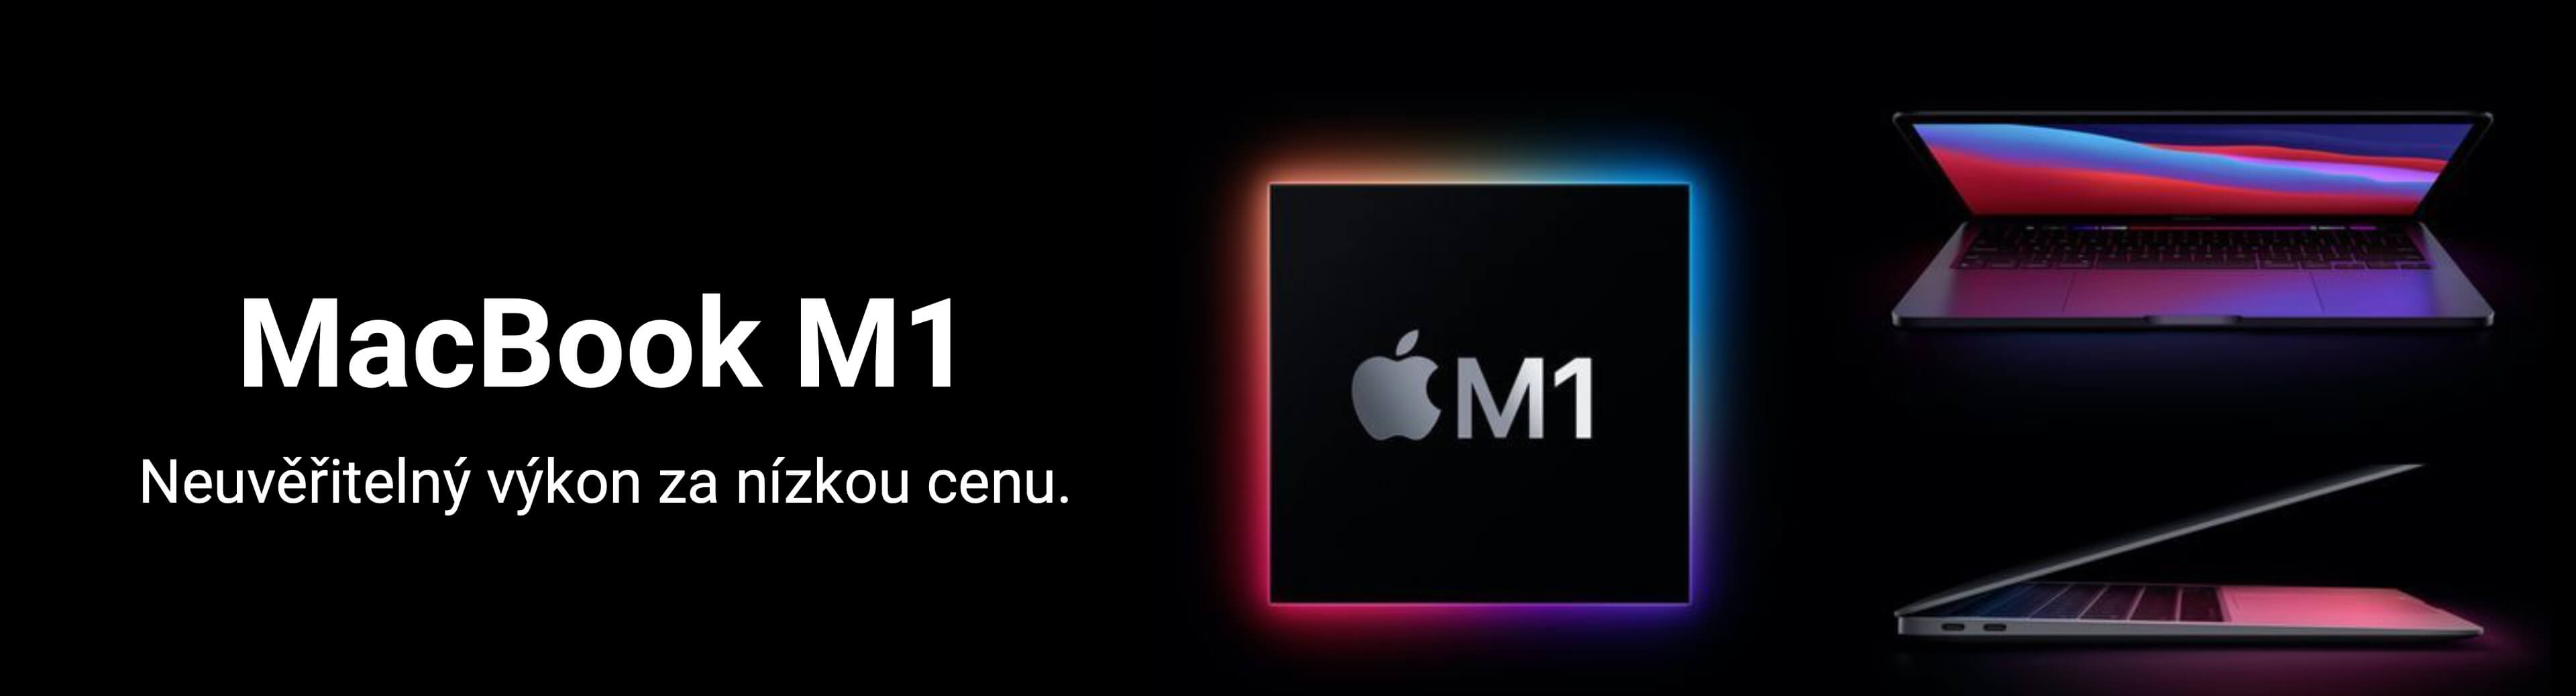 Macbook M1, carusel 3840x1037-2_1